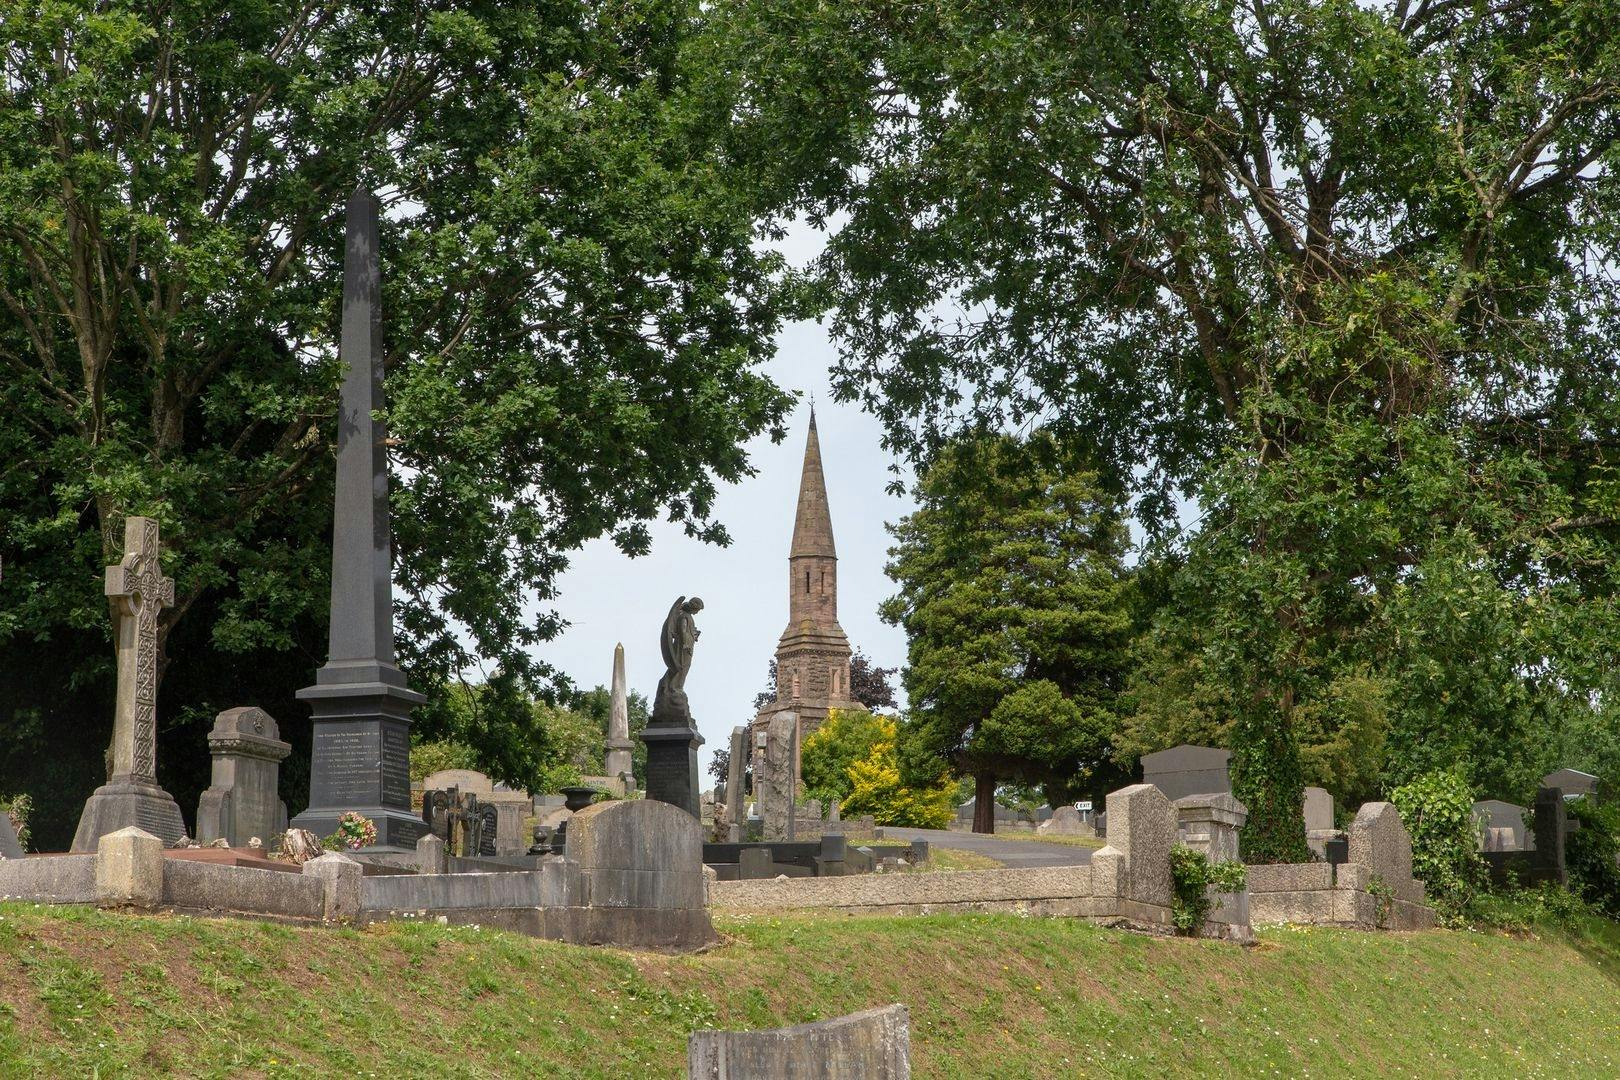 Tour de áudio autoguiado pelo cemitério de Belfast